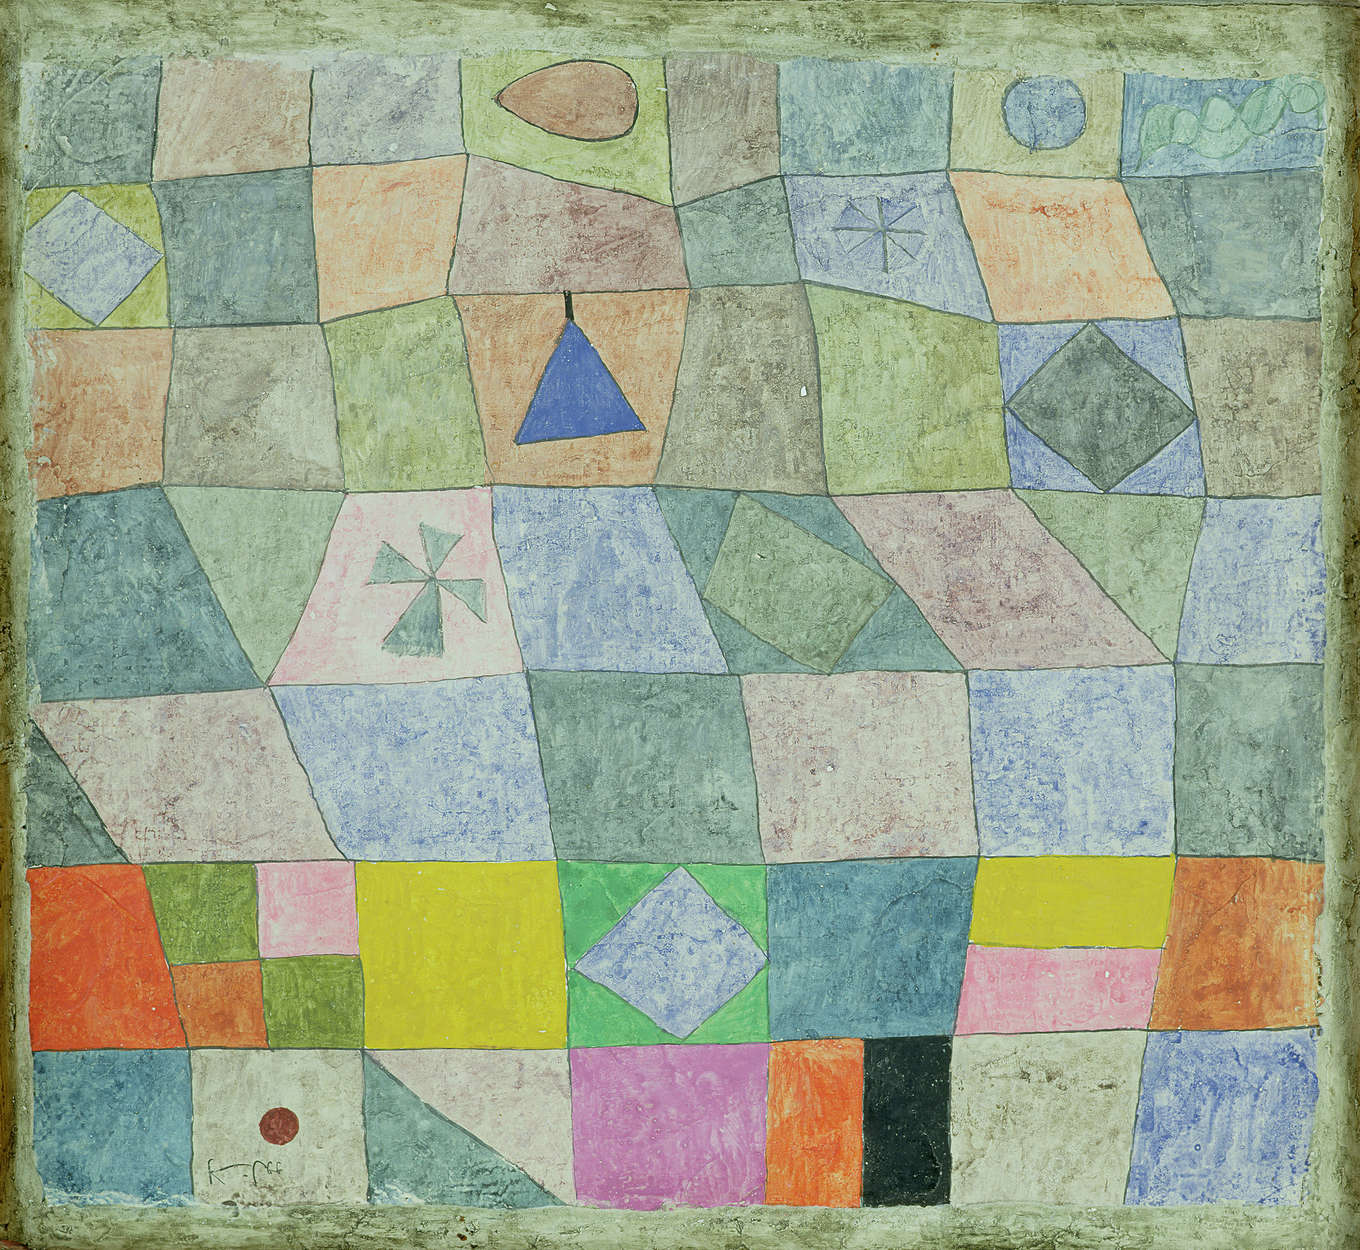             Friendly Play" muurschildering van Paul Klee
        